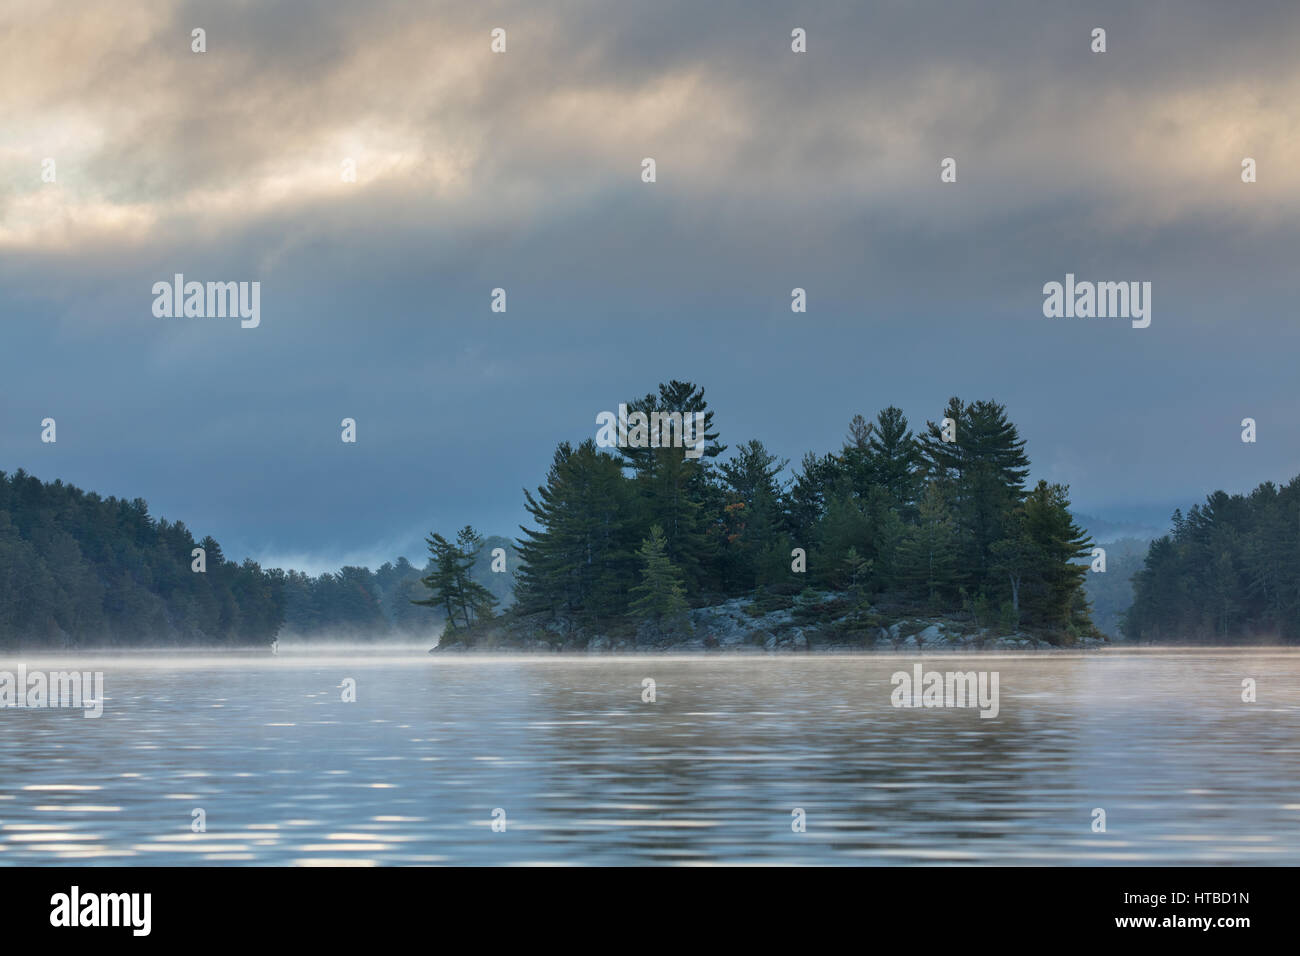 Charlton Lago al amanecer, Ontario, Canadá Foto de stock